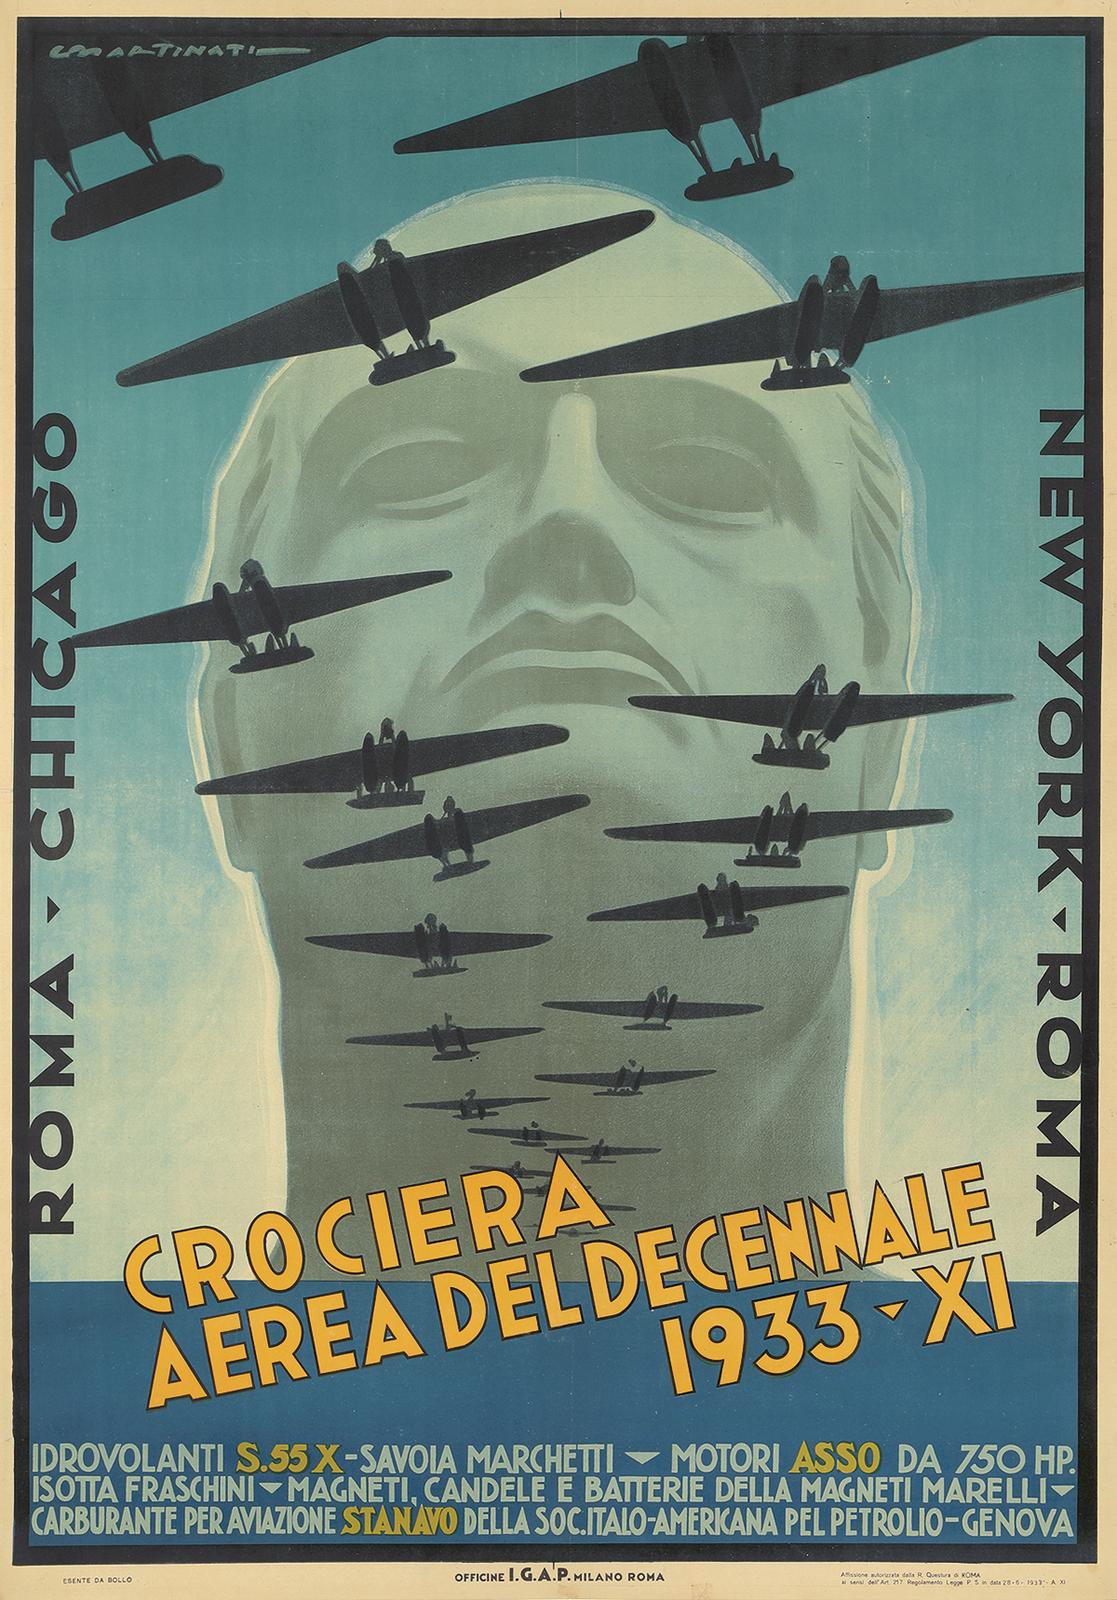 Crociera Aerea del Decennale. 1933. | Poster Auctions International, Inc.